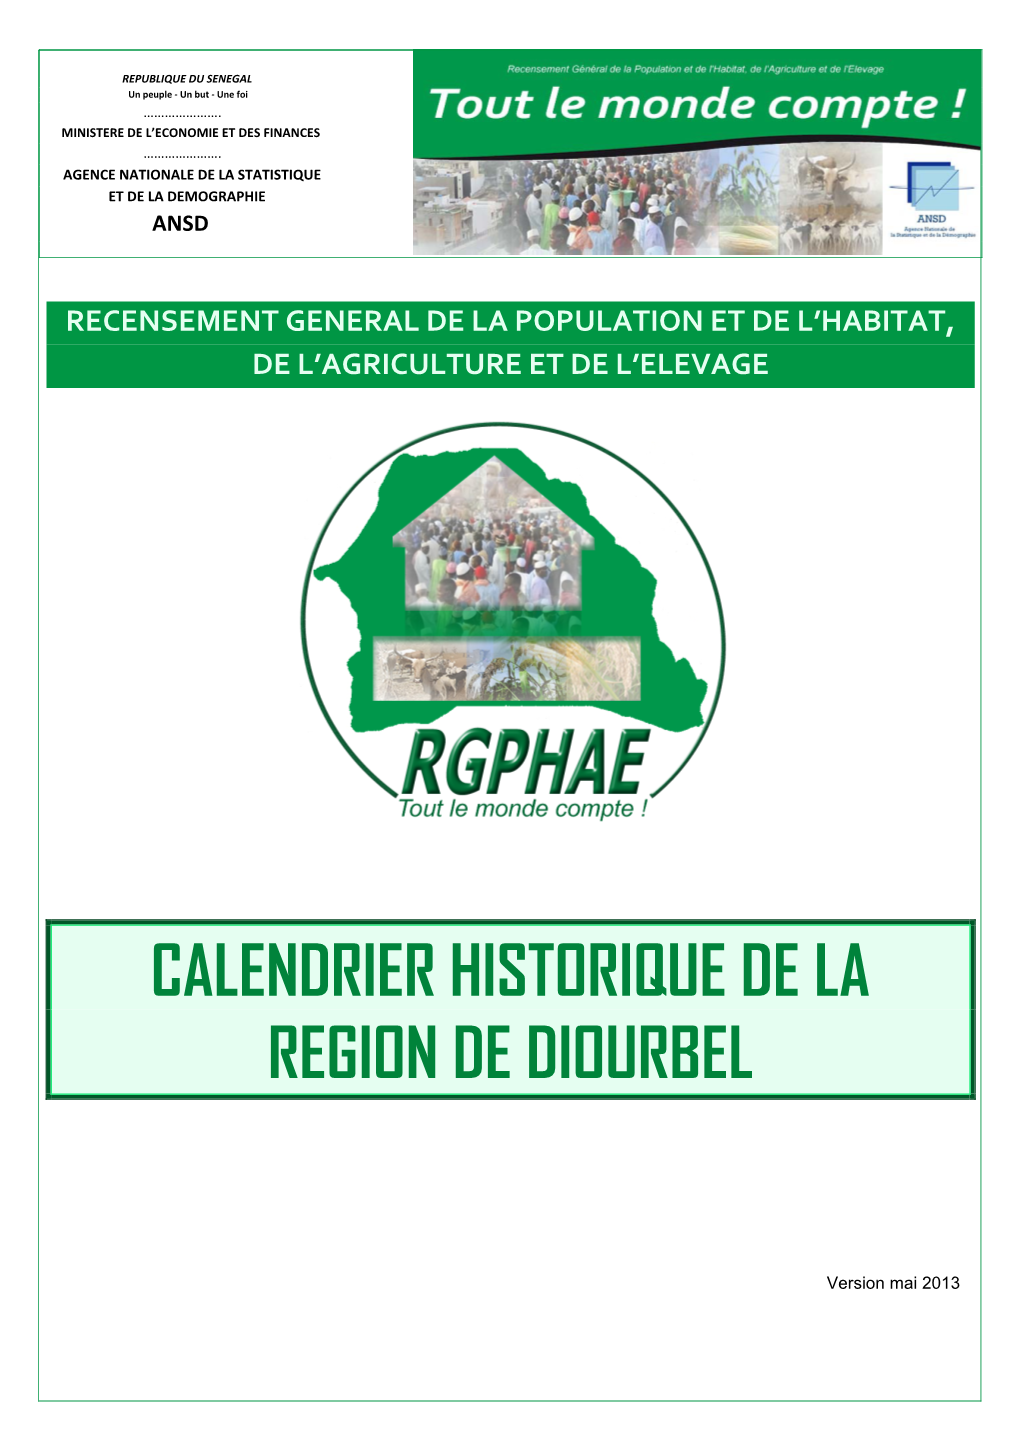 Calendrier Historique De La Region De Diourbel